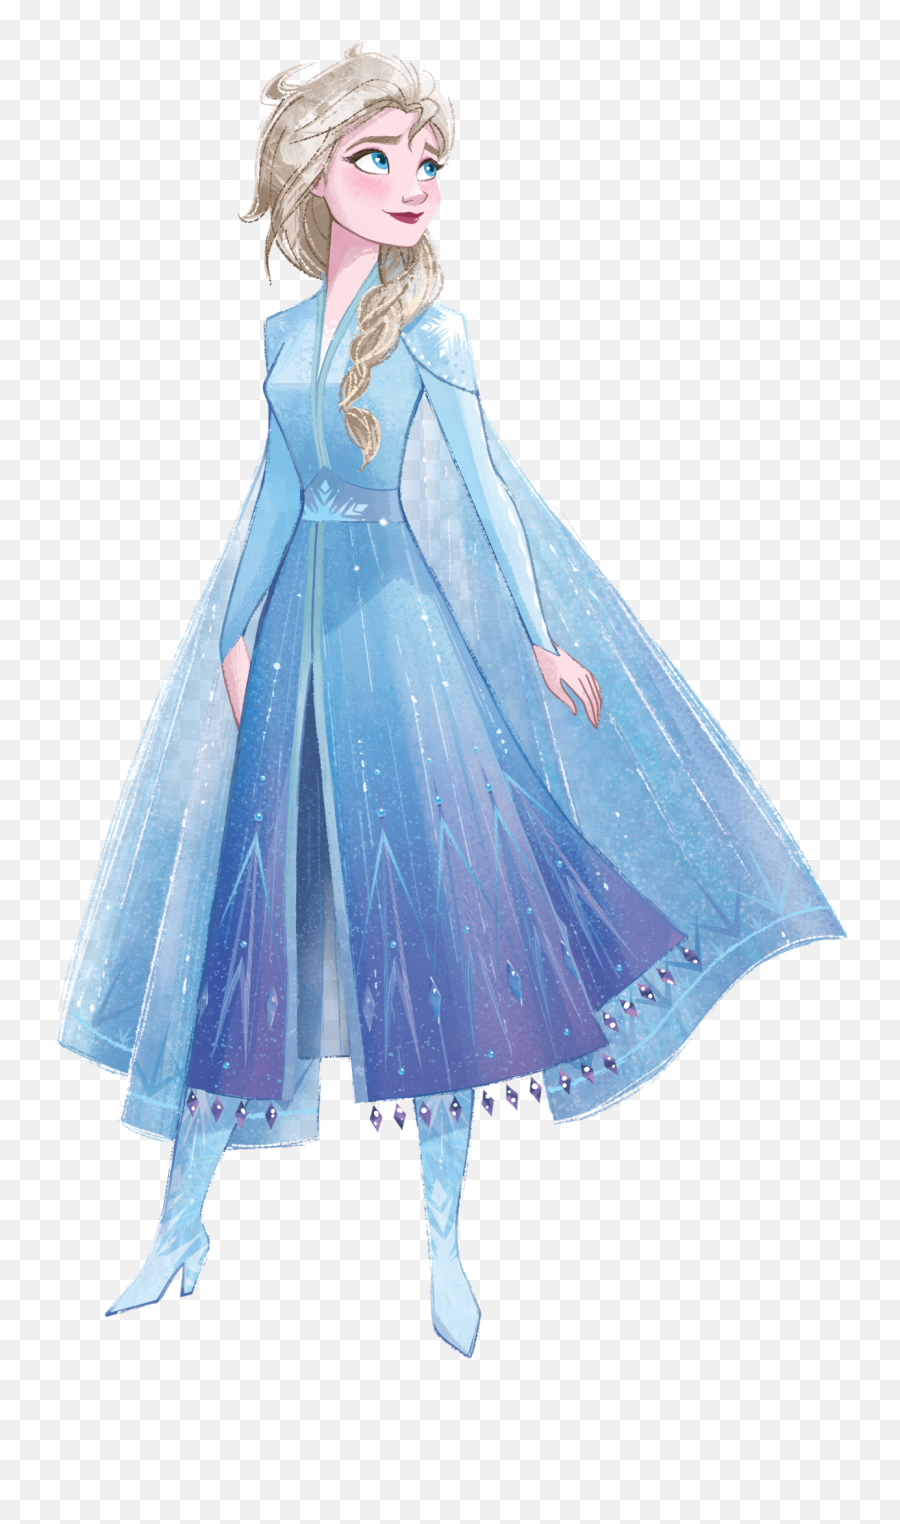 Disney Frozen 2 Clipart In Png Format - Elsa Frozen 2 Clipart Emoji,Png